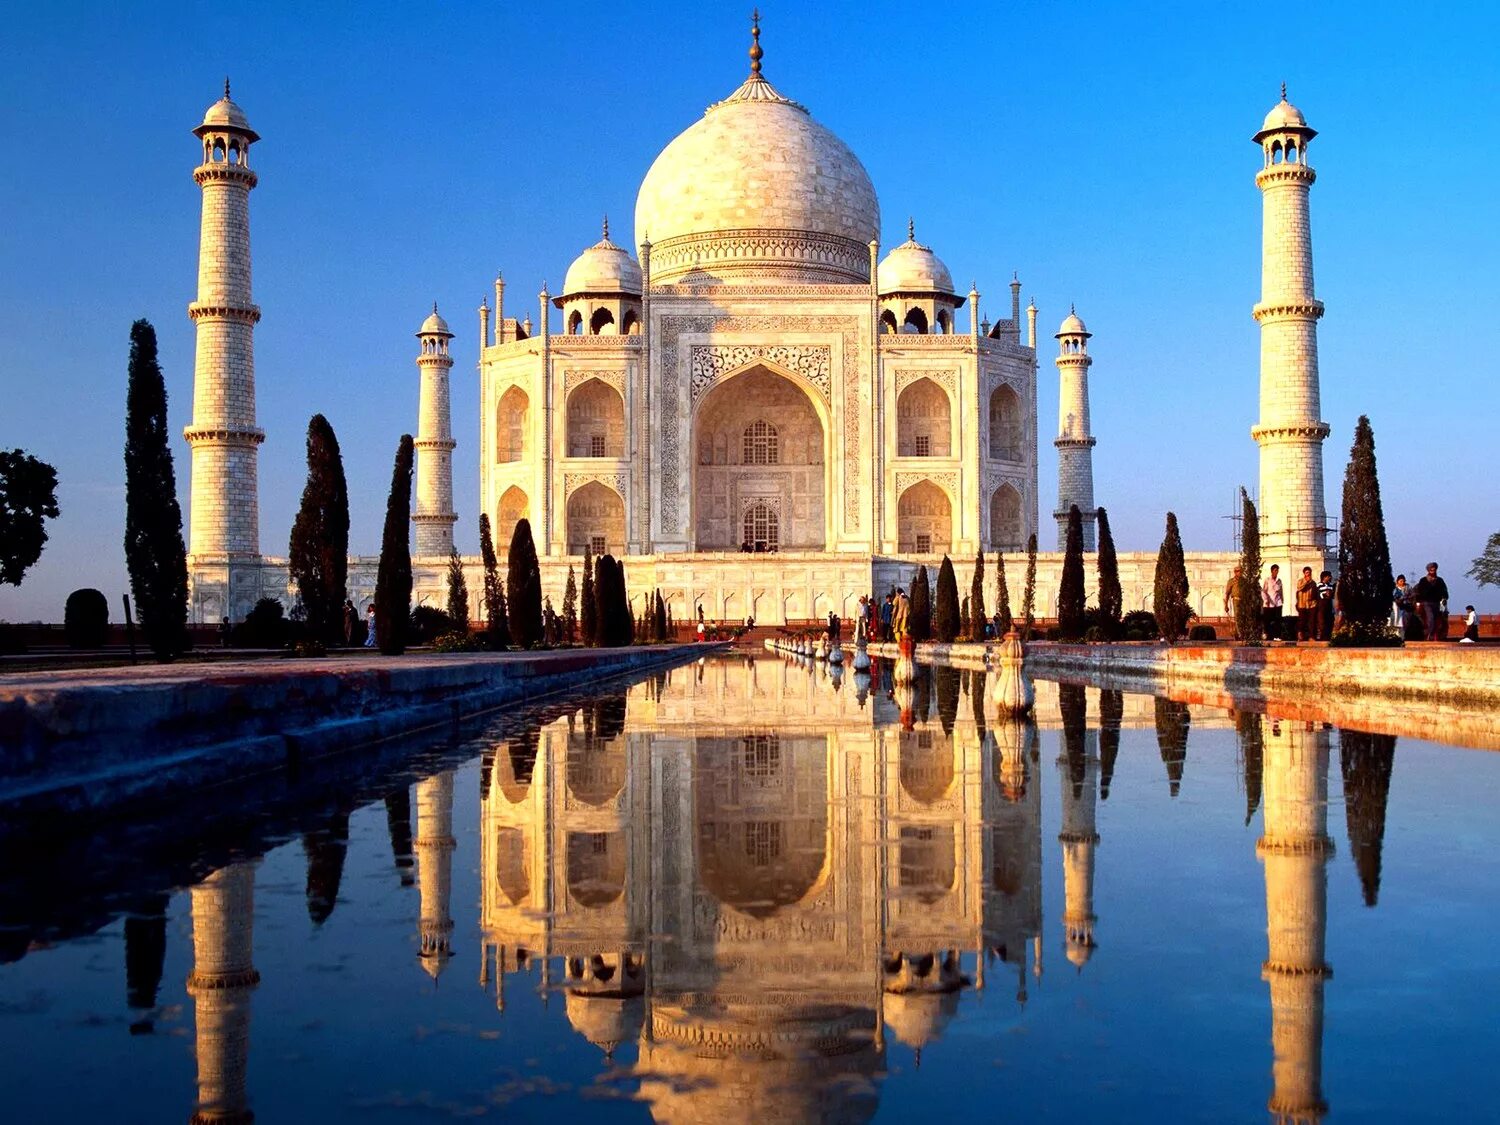 Достопримечательности каждой страны. Мавзолей Тадж-Махал в Индии. Мечеть в Индии Тадж Махал. Тадж-Махал, Агра, Индия (Азия). Архитектура Индии Тадж Махал.